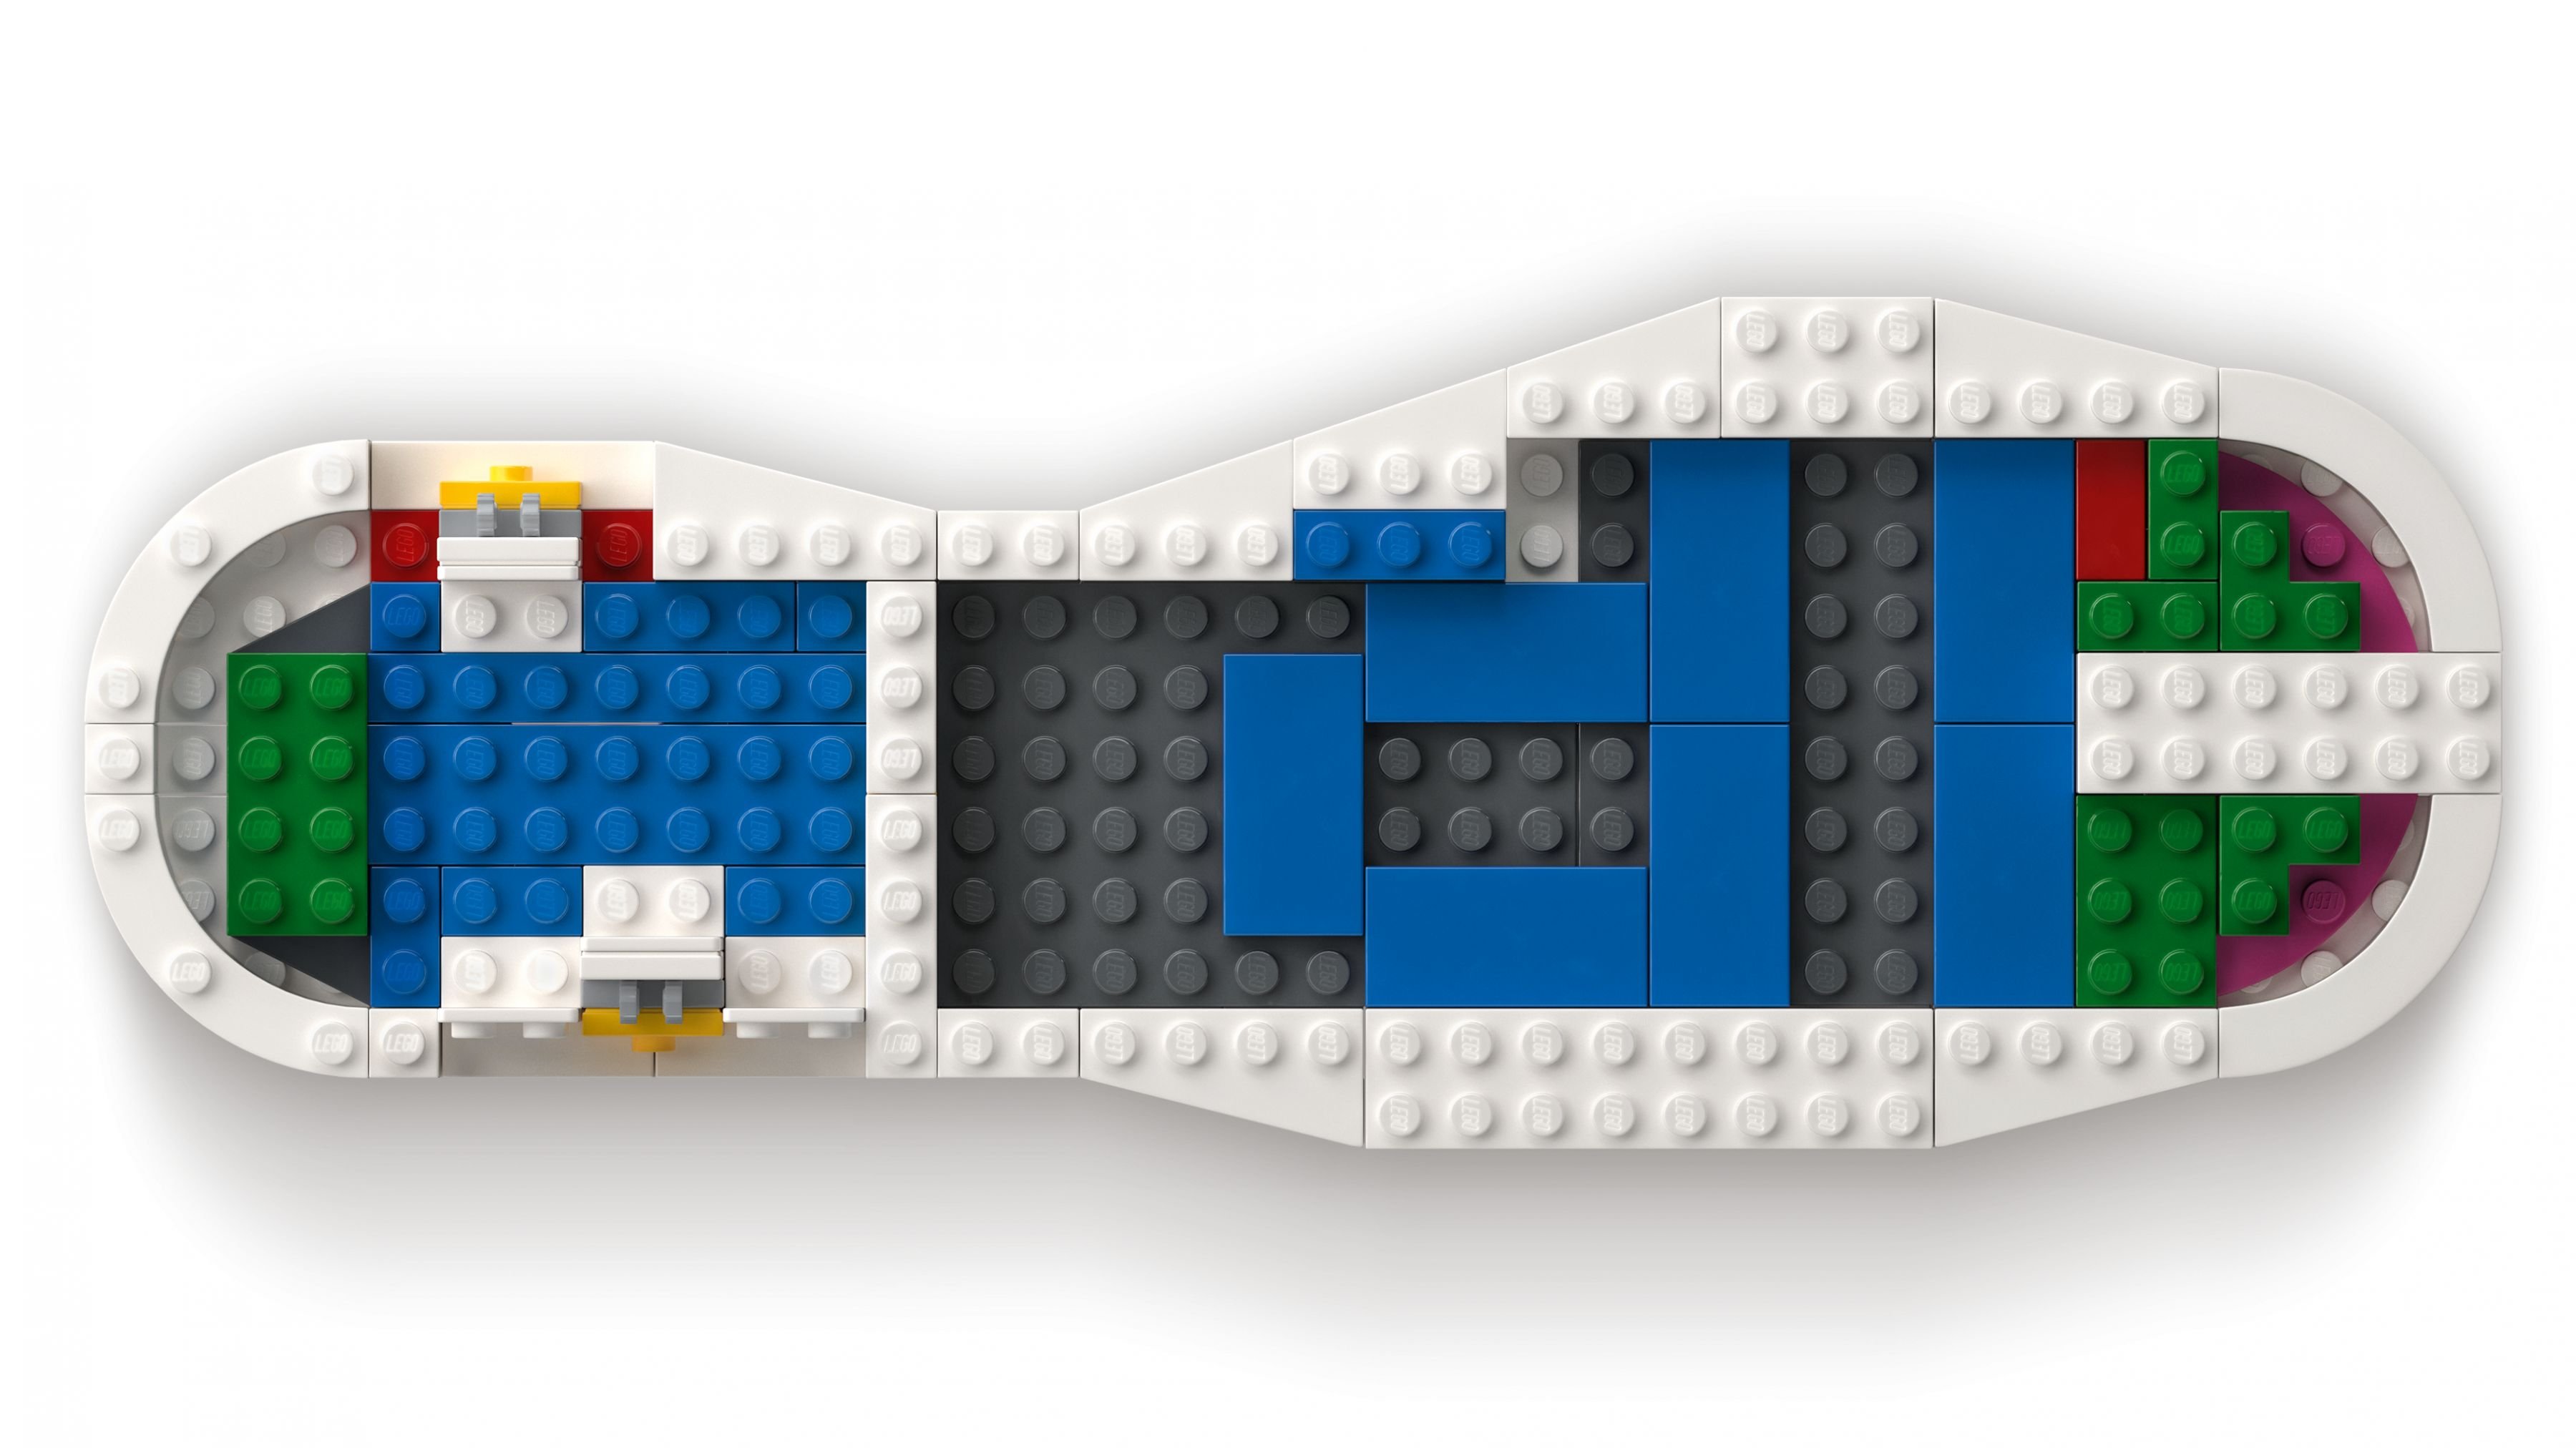 LEGO Advanced Models 10282 adidas Originals Superstar LEGO_10282_web_sec01_nobg.jpg